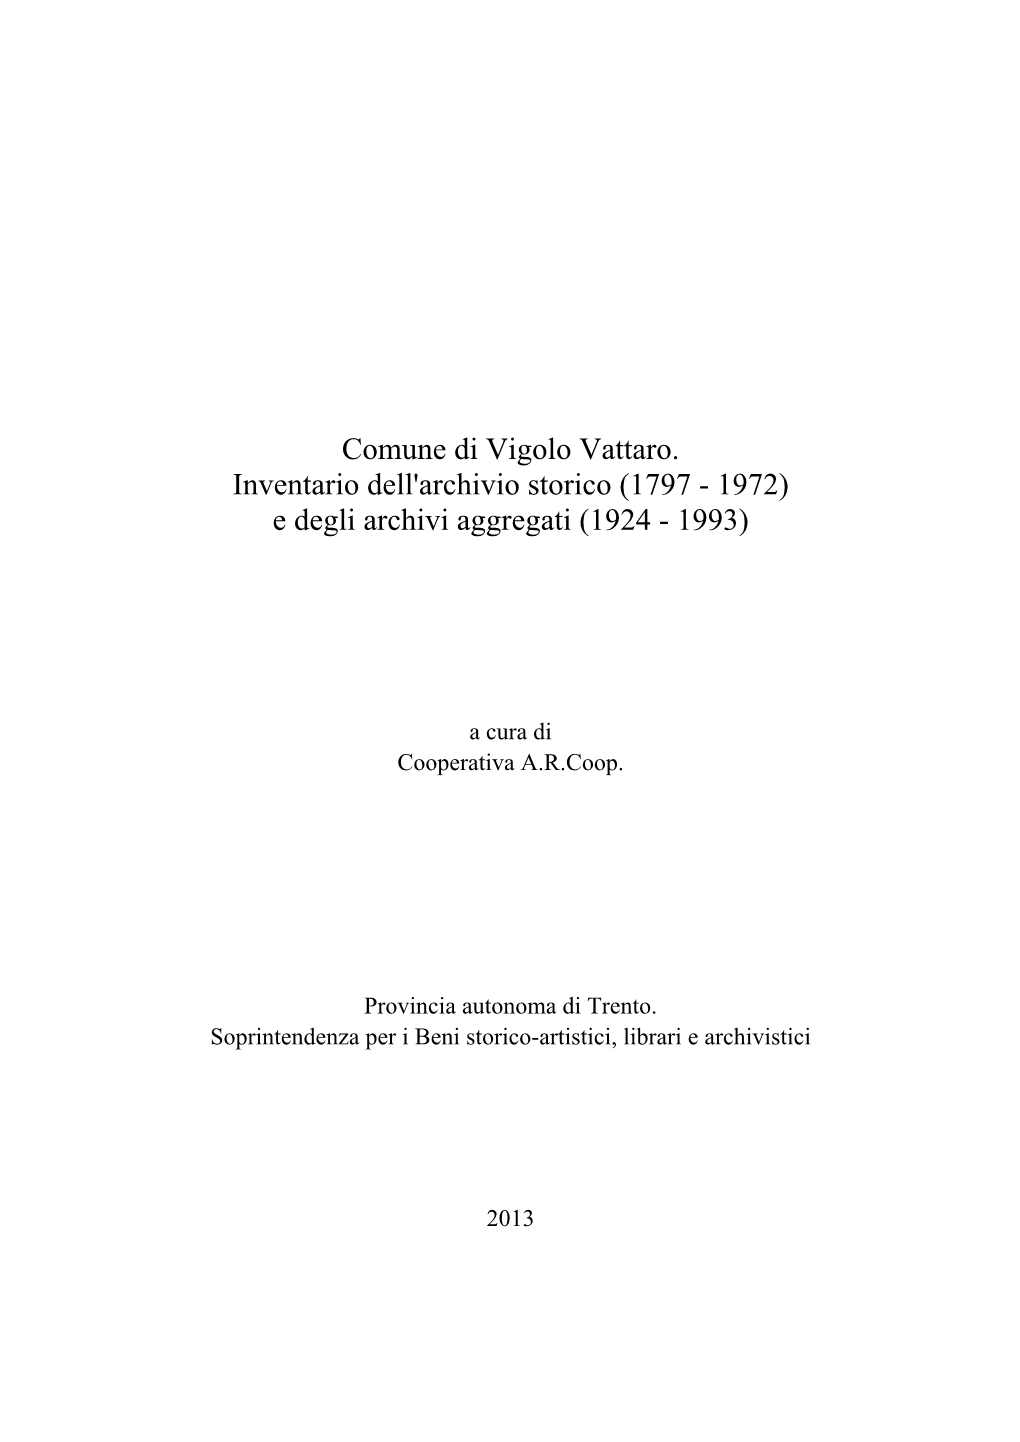 Comune Di Vigolo Vattaro. Inventario Dell'archivio Storico (1797 - 1972) E Degli Archivi Aggregati (1924 - 1993)